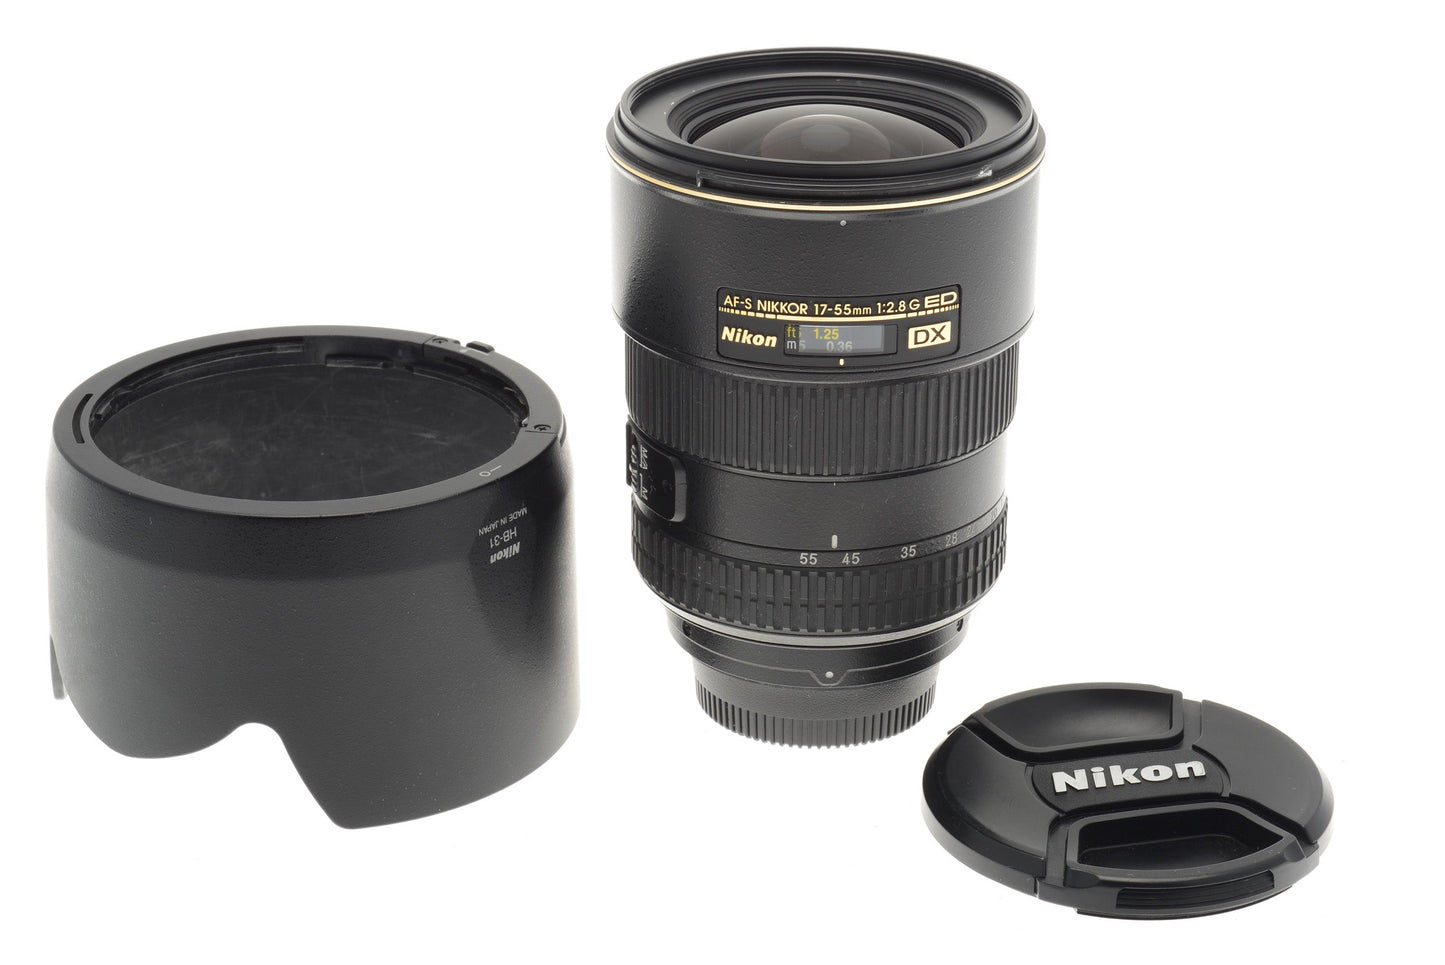 Nikon 17-55mm f2.8 G ED AF-S Nikkor - Lens